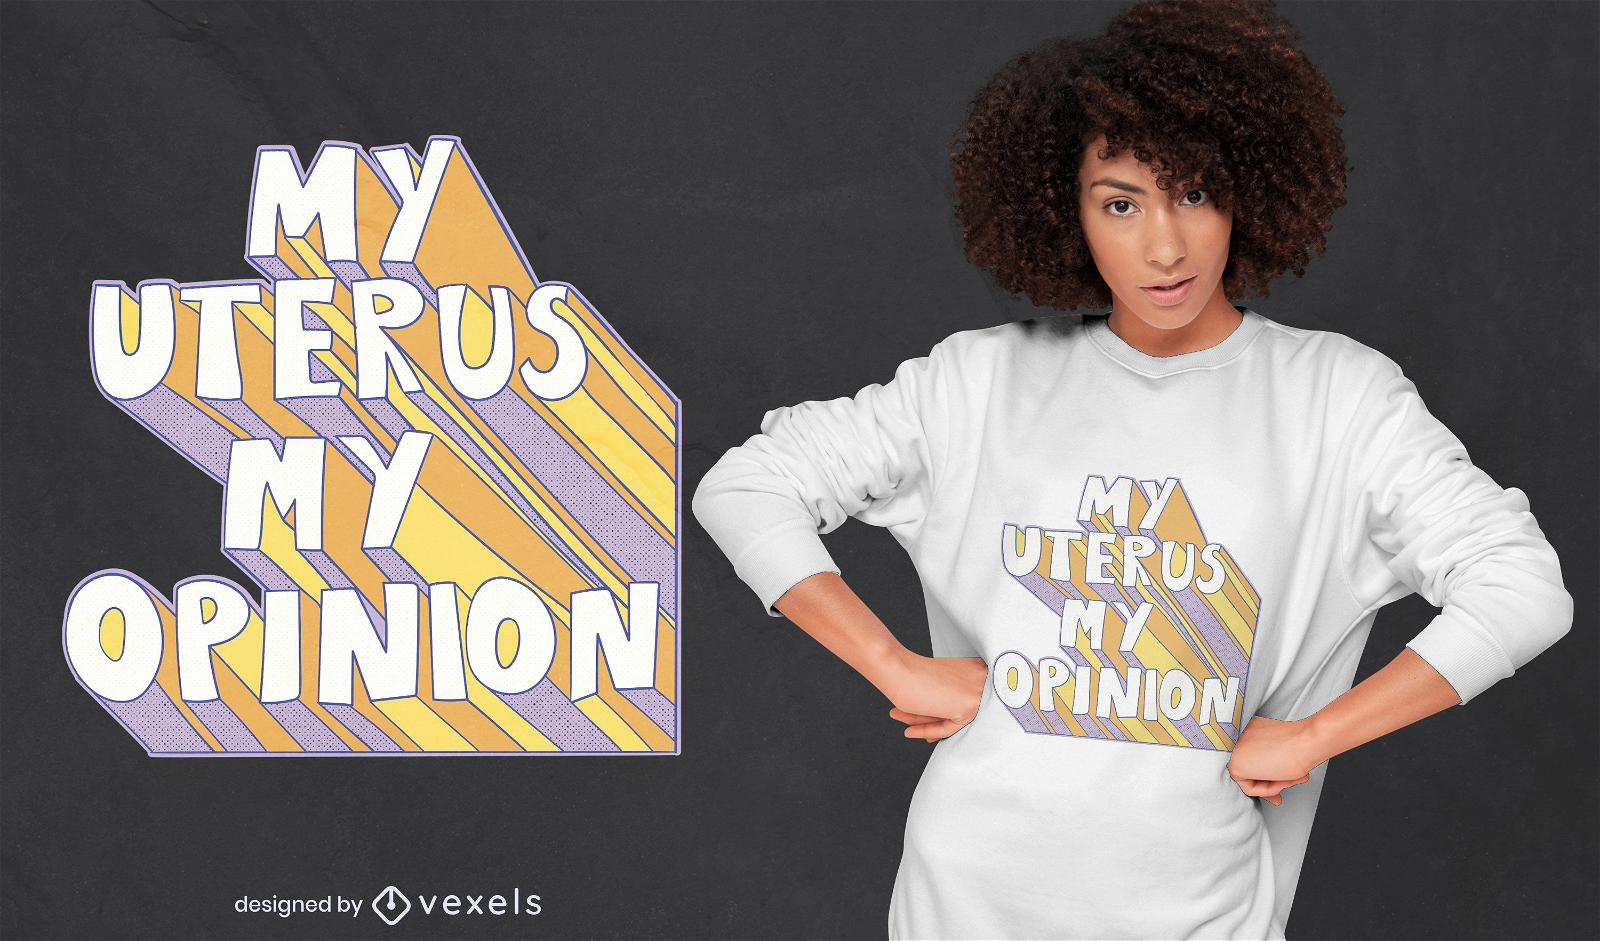 My uterus my opinion t-shirt design